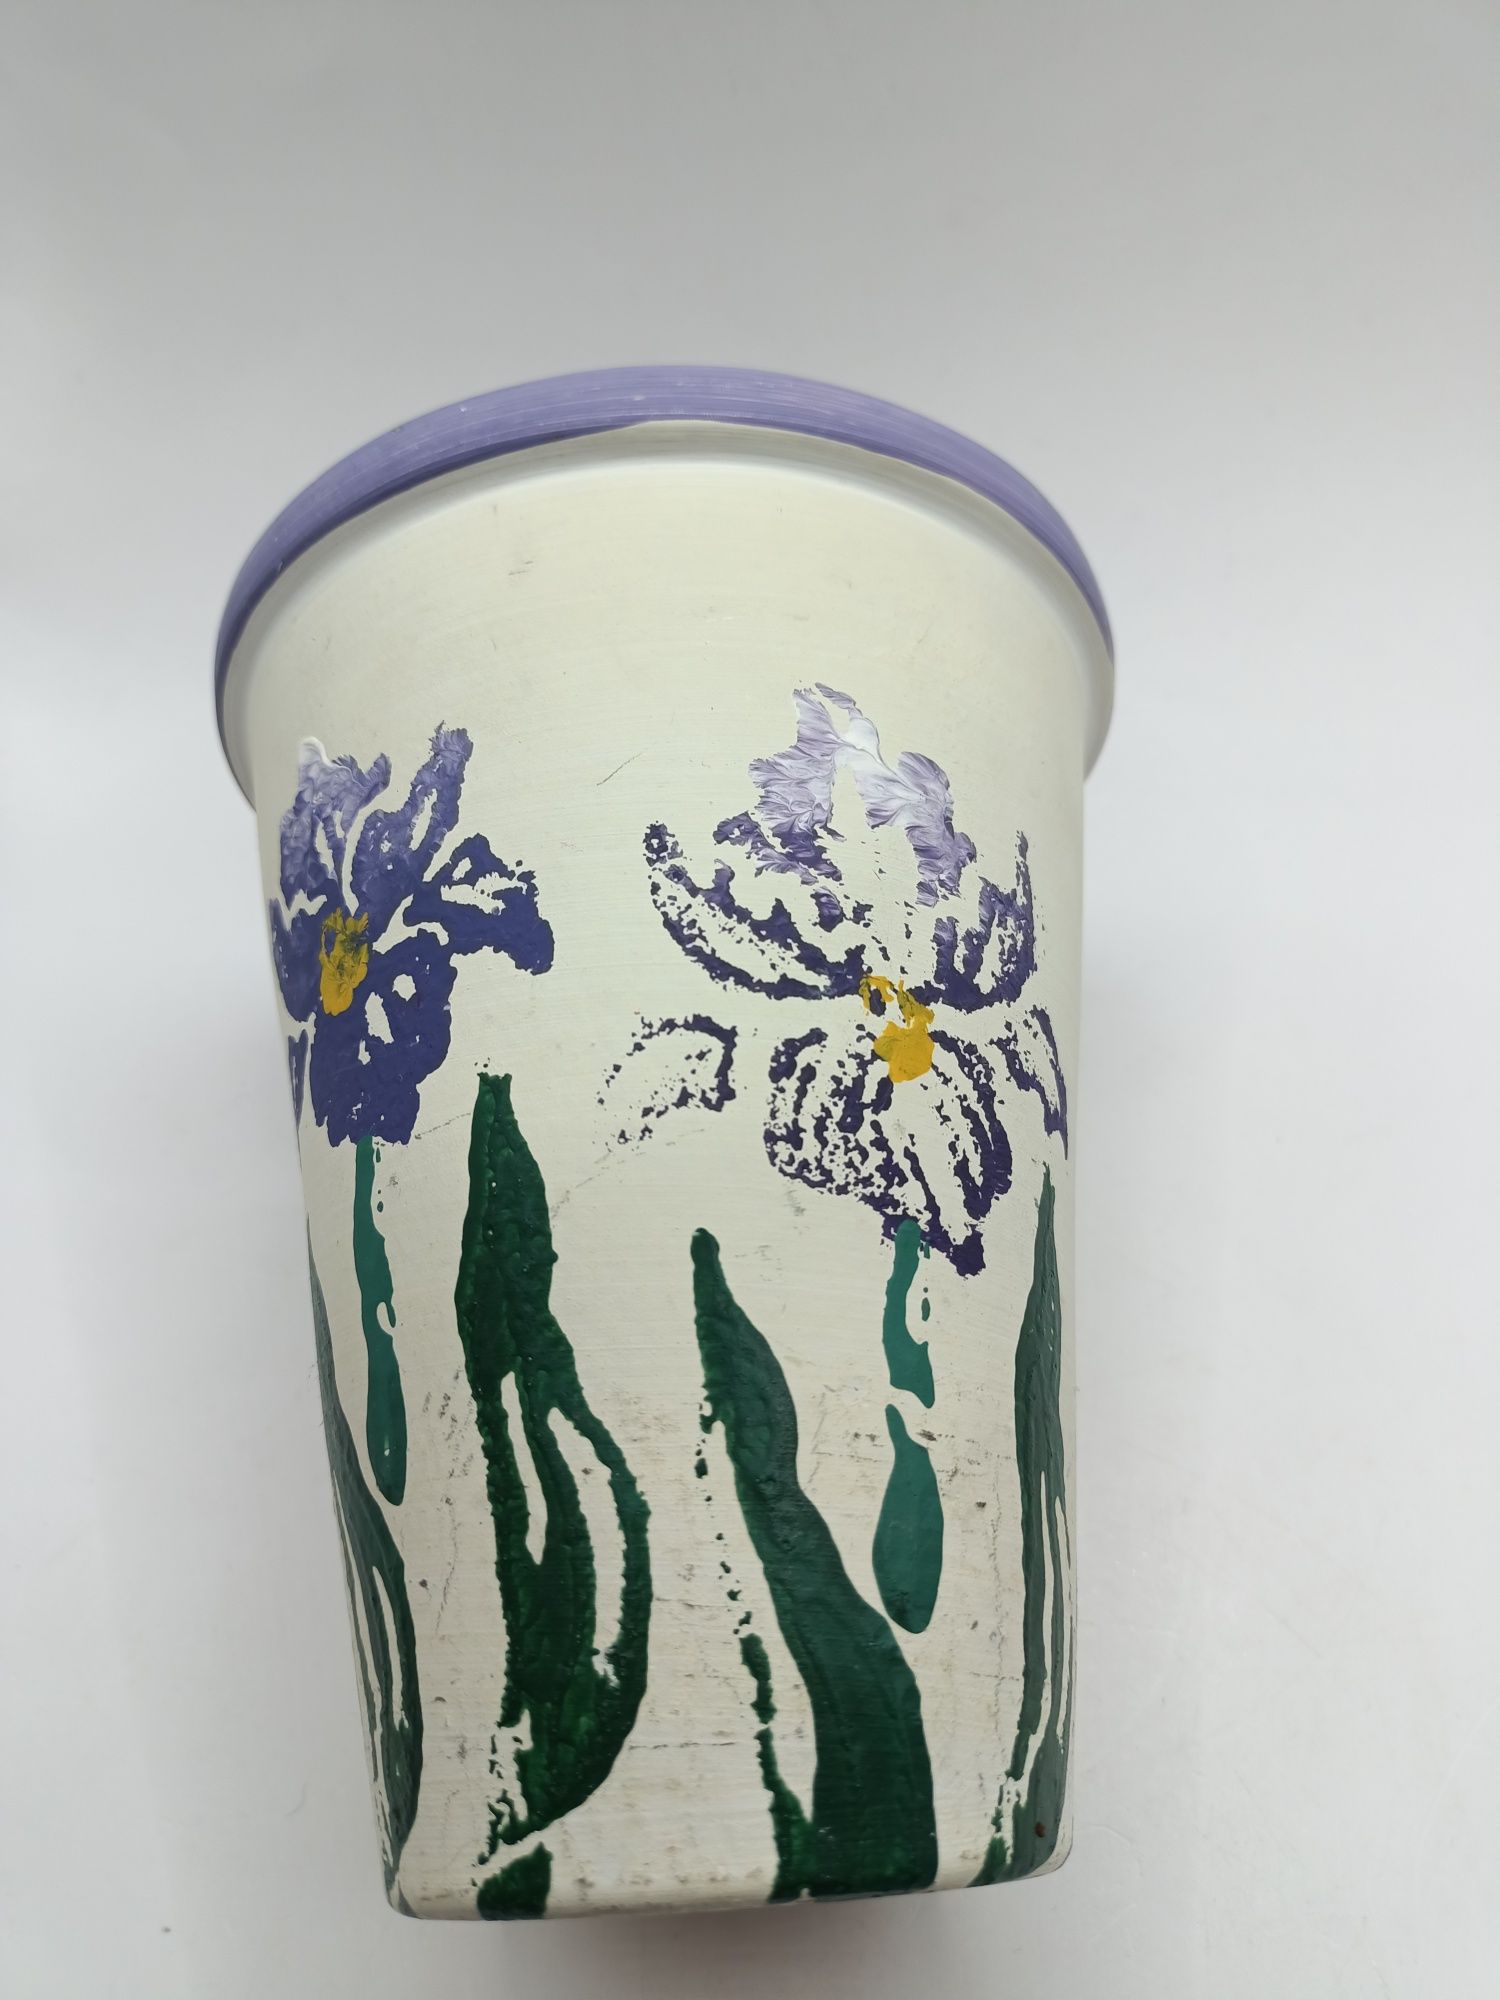 Doniczka osłonka wąska długa ceramiczna wiosenne kwiaty